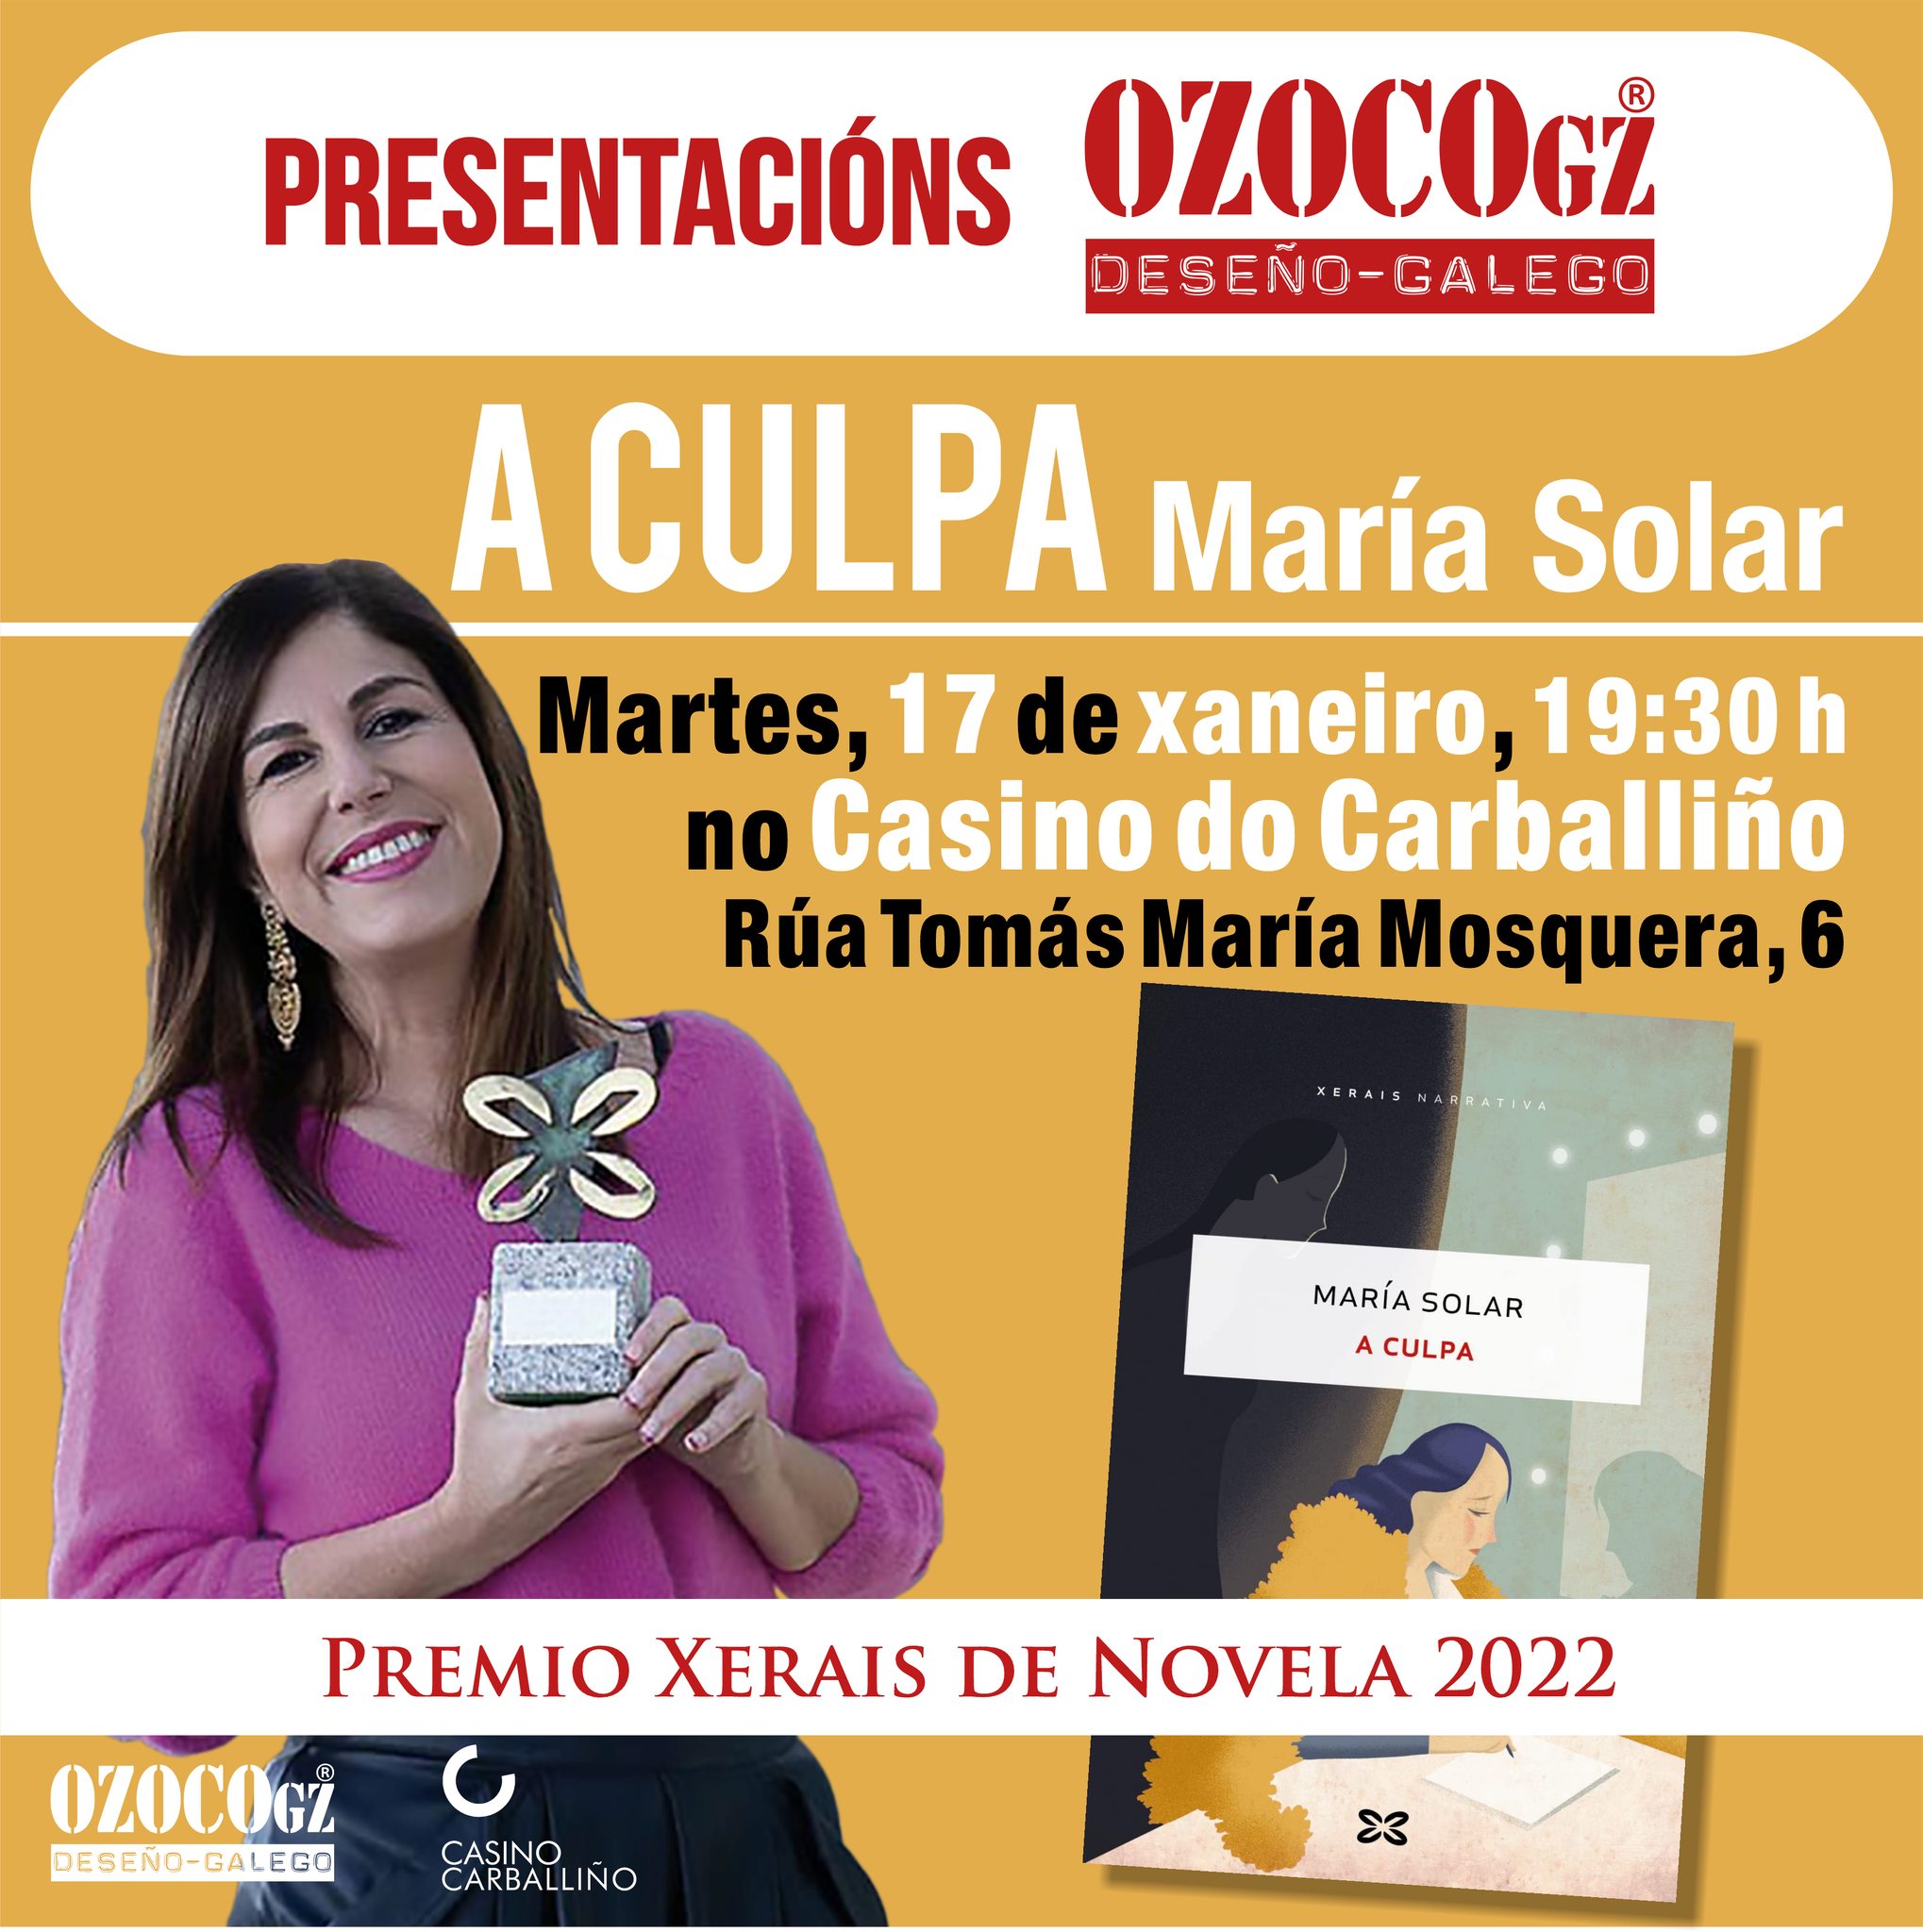 Presentación do libro A CULPA, de María Solar